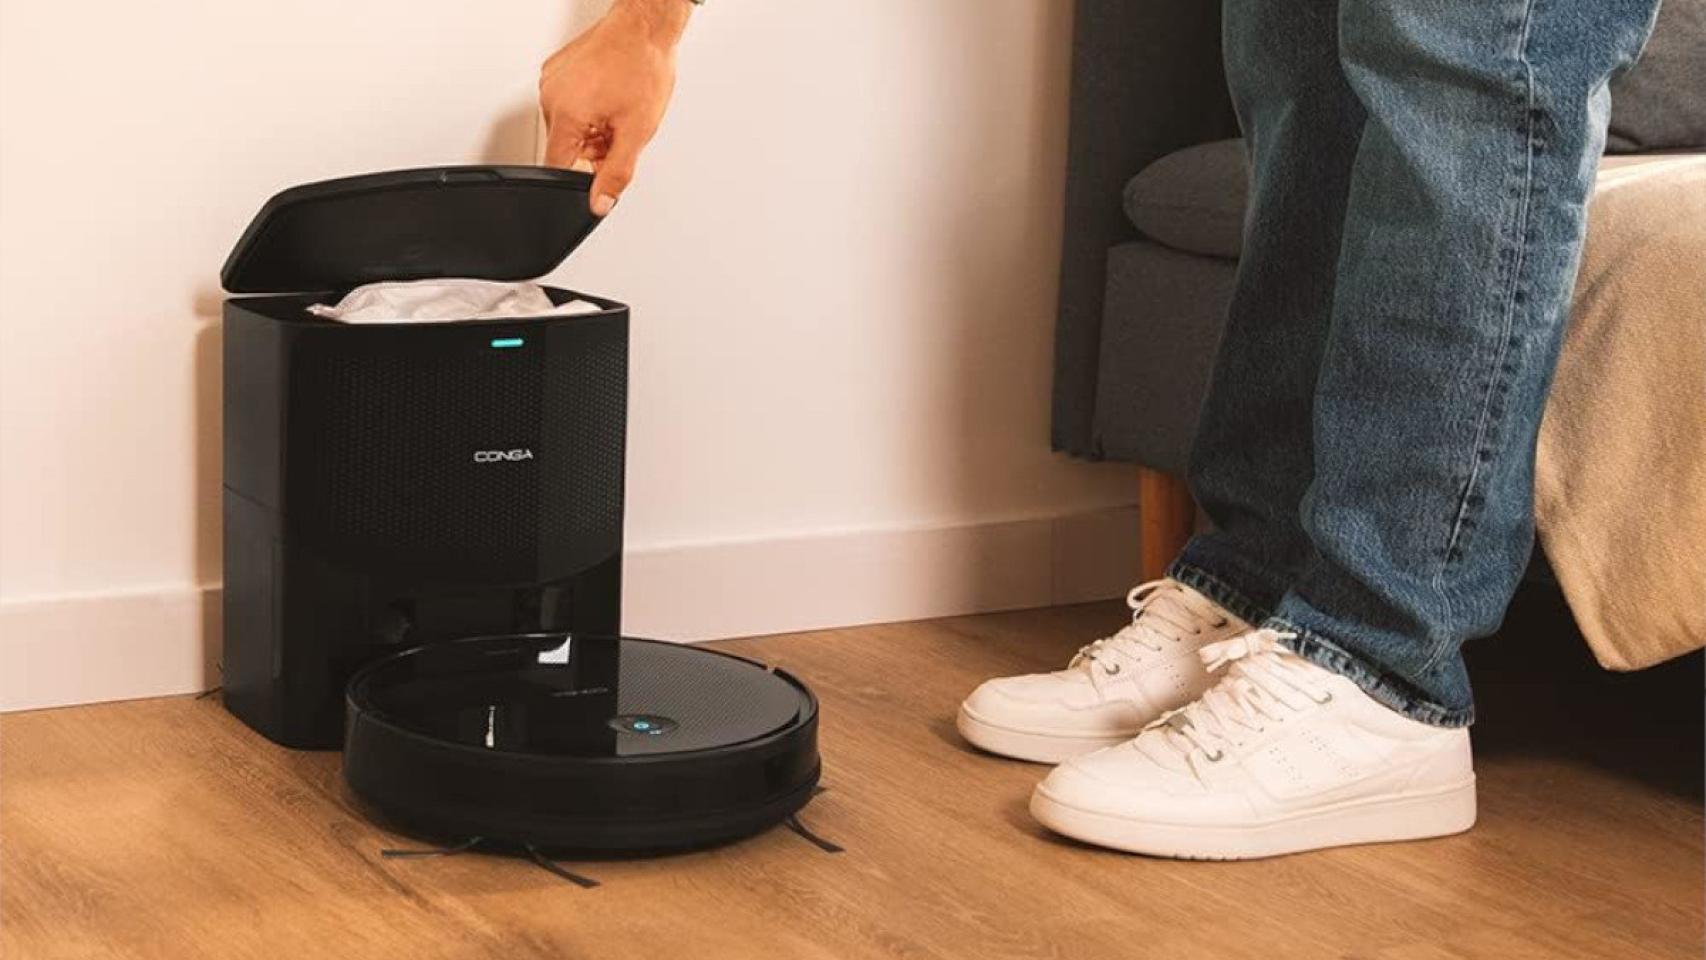 Limpia tu hogar sin esfuerzo con este robot aspirador Cecotec Conga con  este descuento